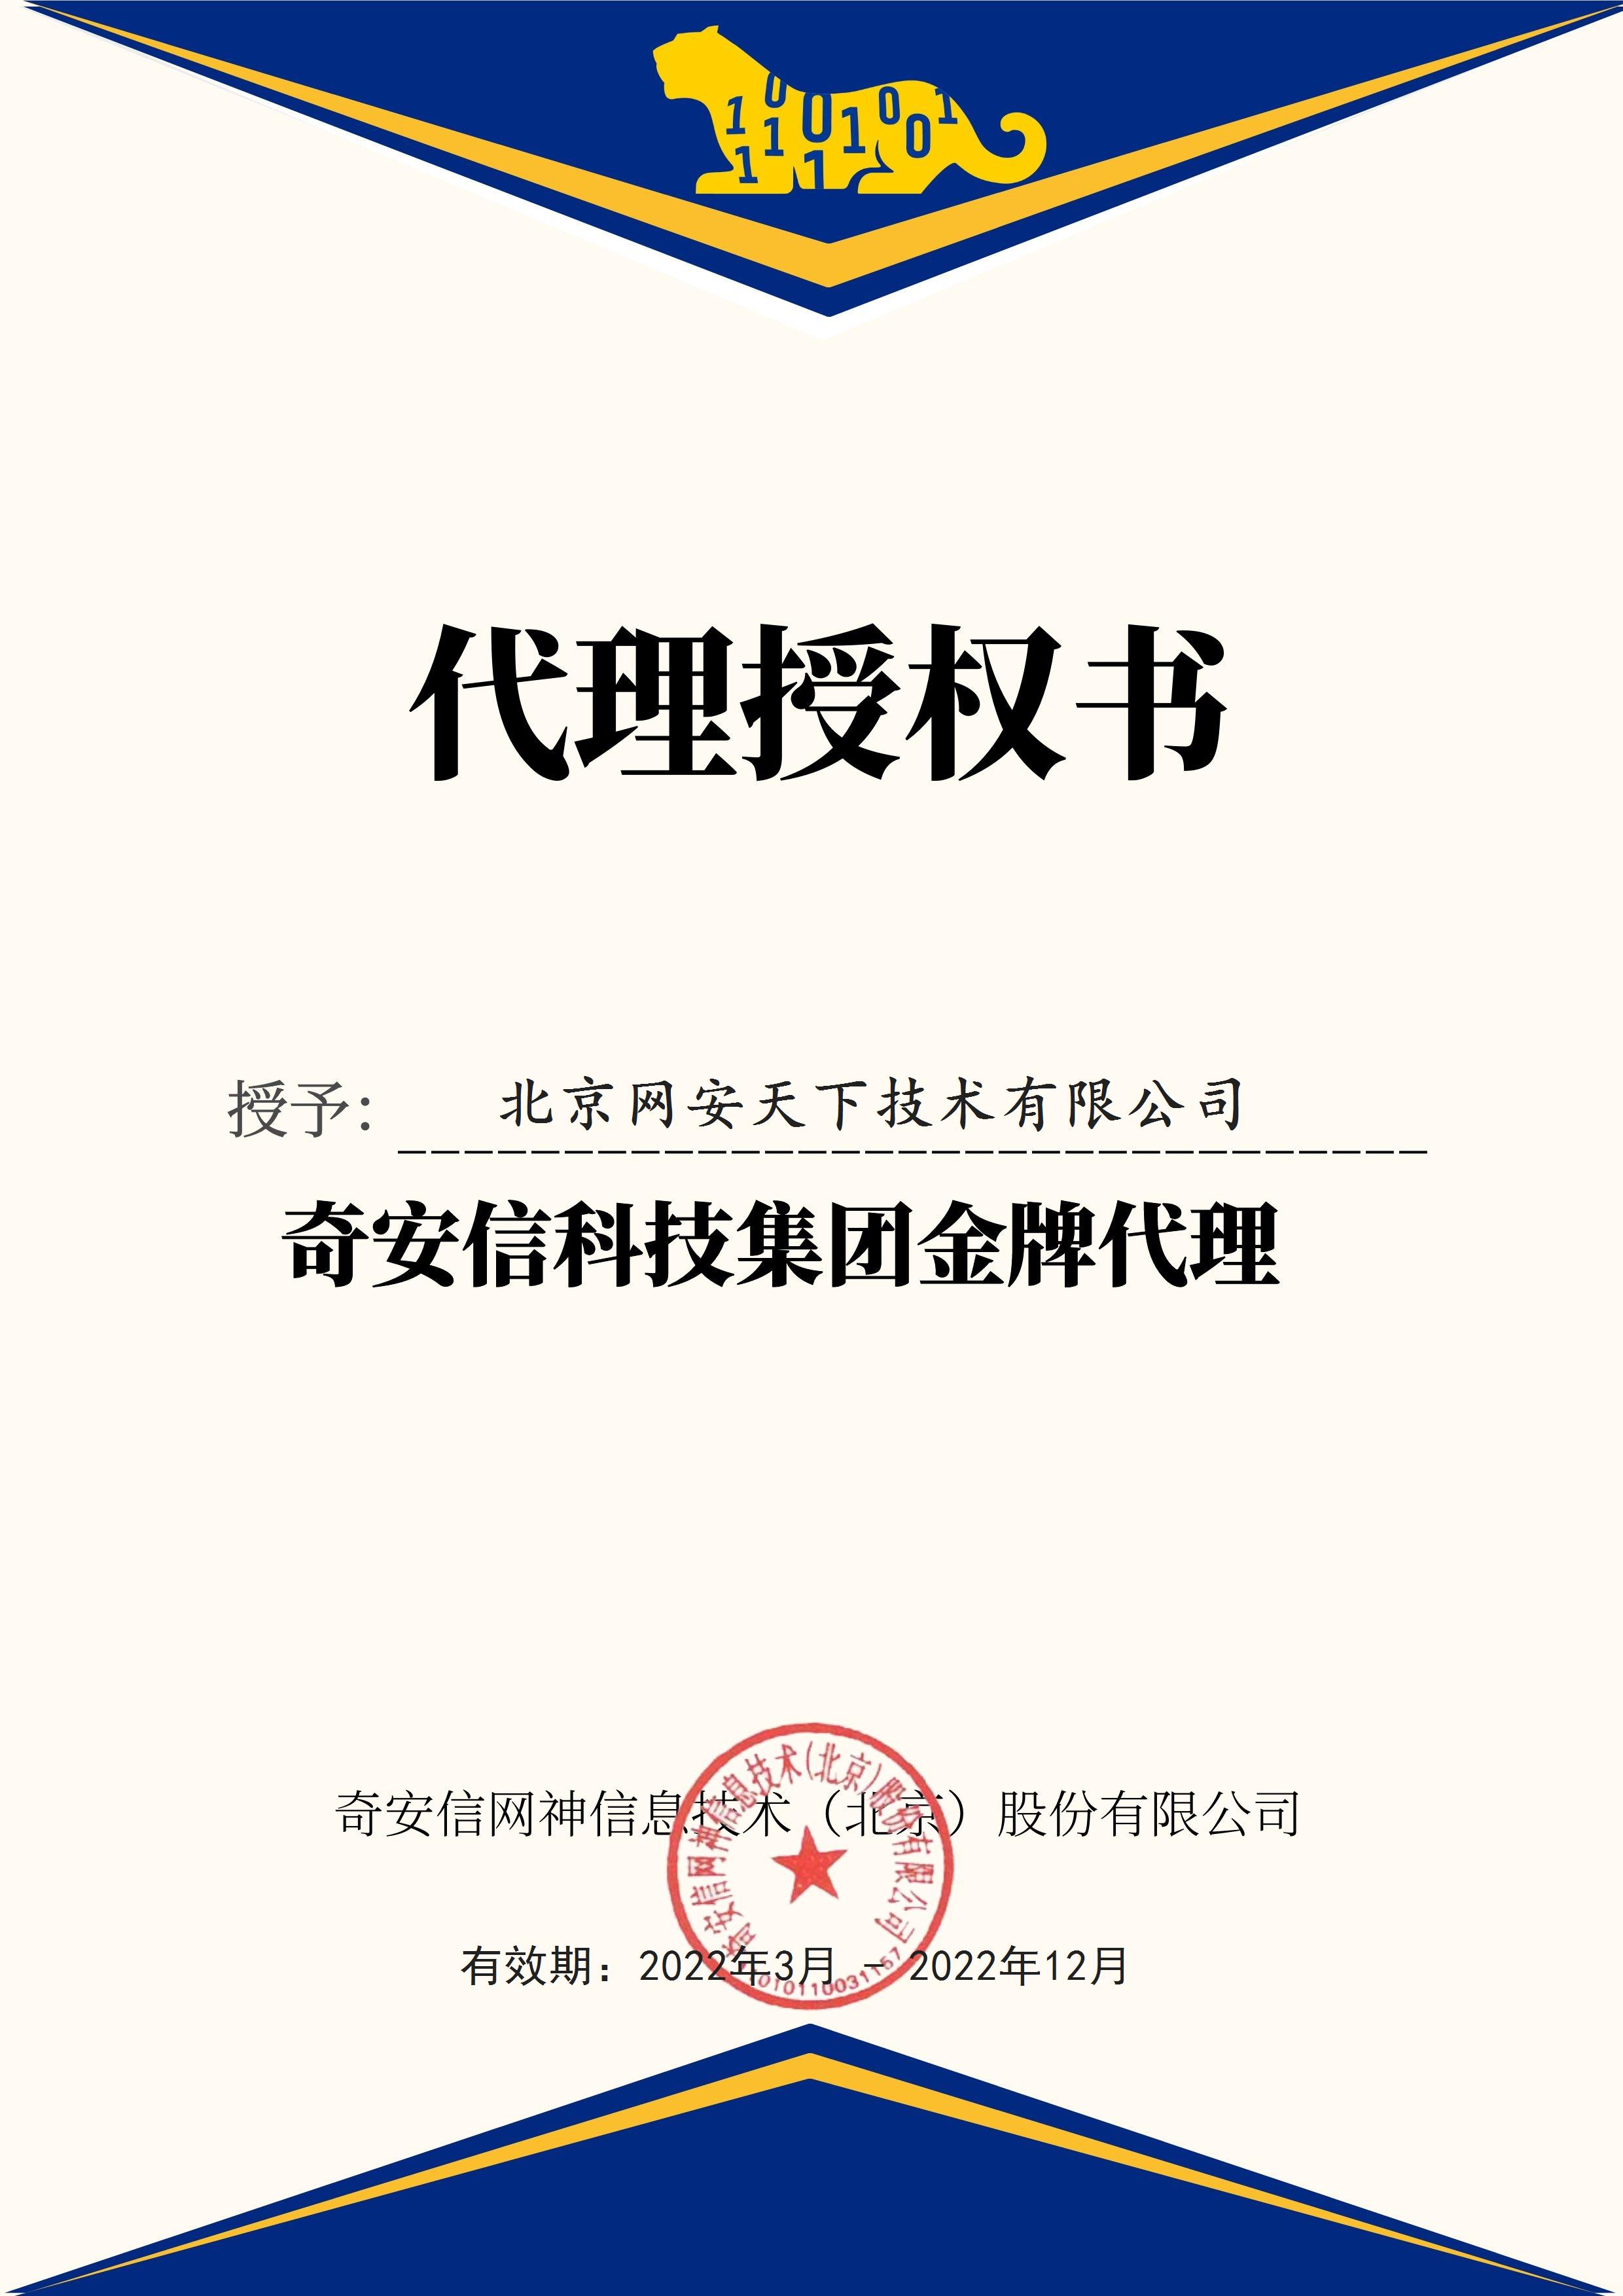 網安天下(xià)簽約2022年度奇安信科技集團代理(lǐ)商